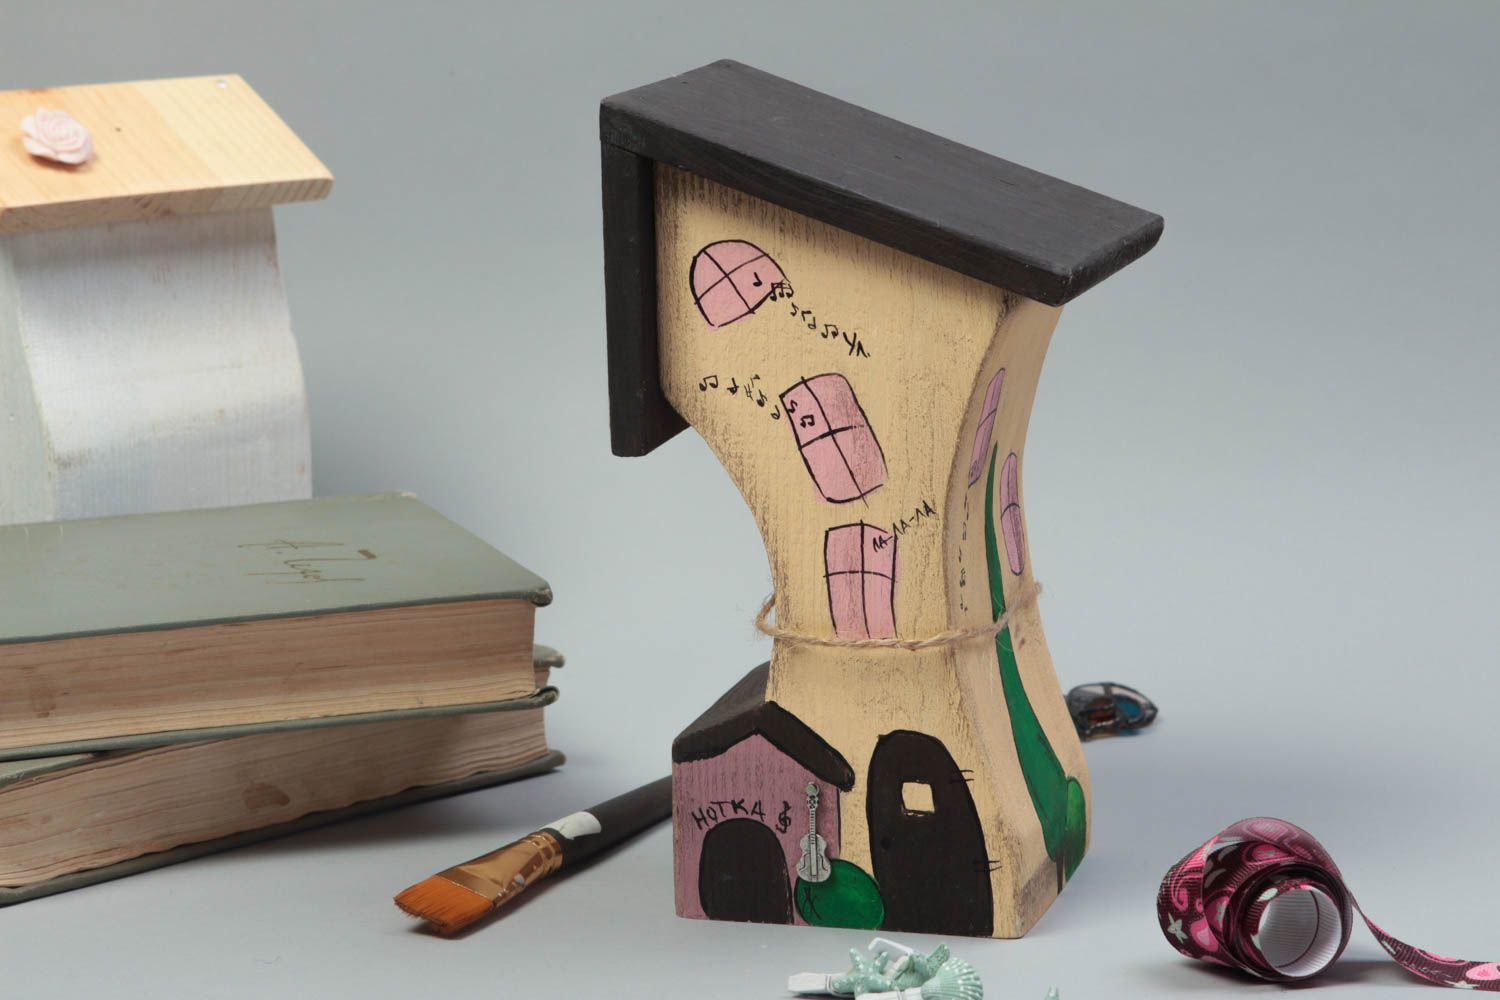 Wood sculpture handmade gifts souvenir ideas wooden toy housewarming gift ideas photo 1